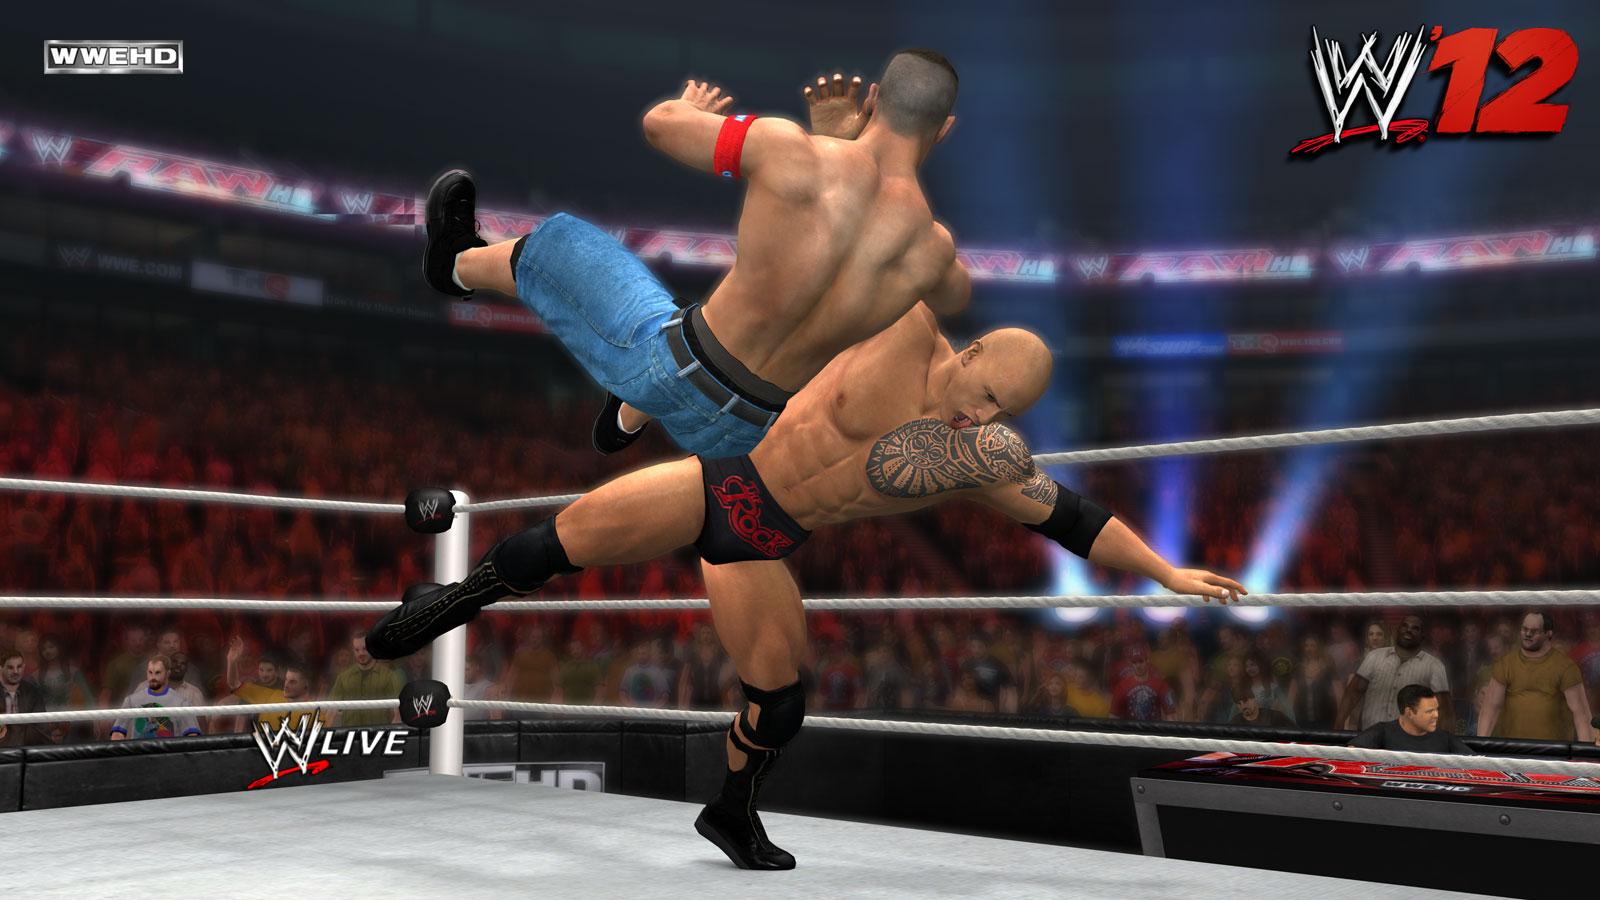 WWE 12 Download Free PC Game Full Version